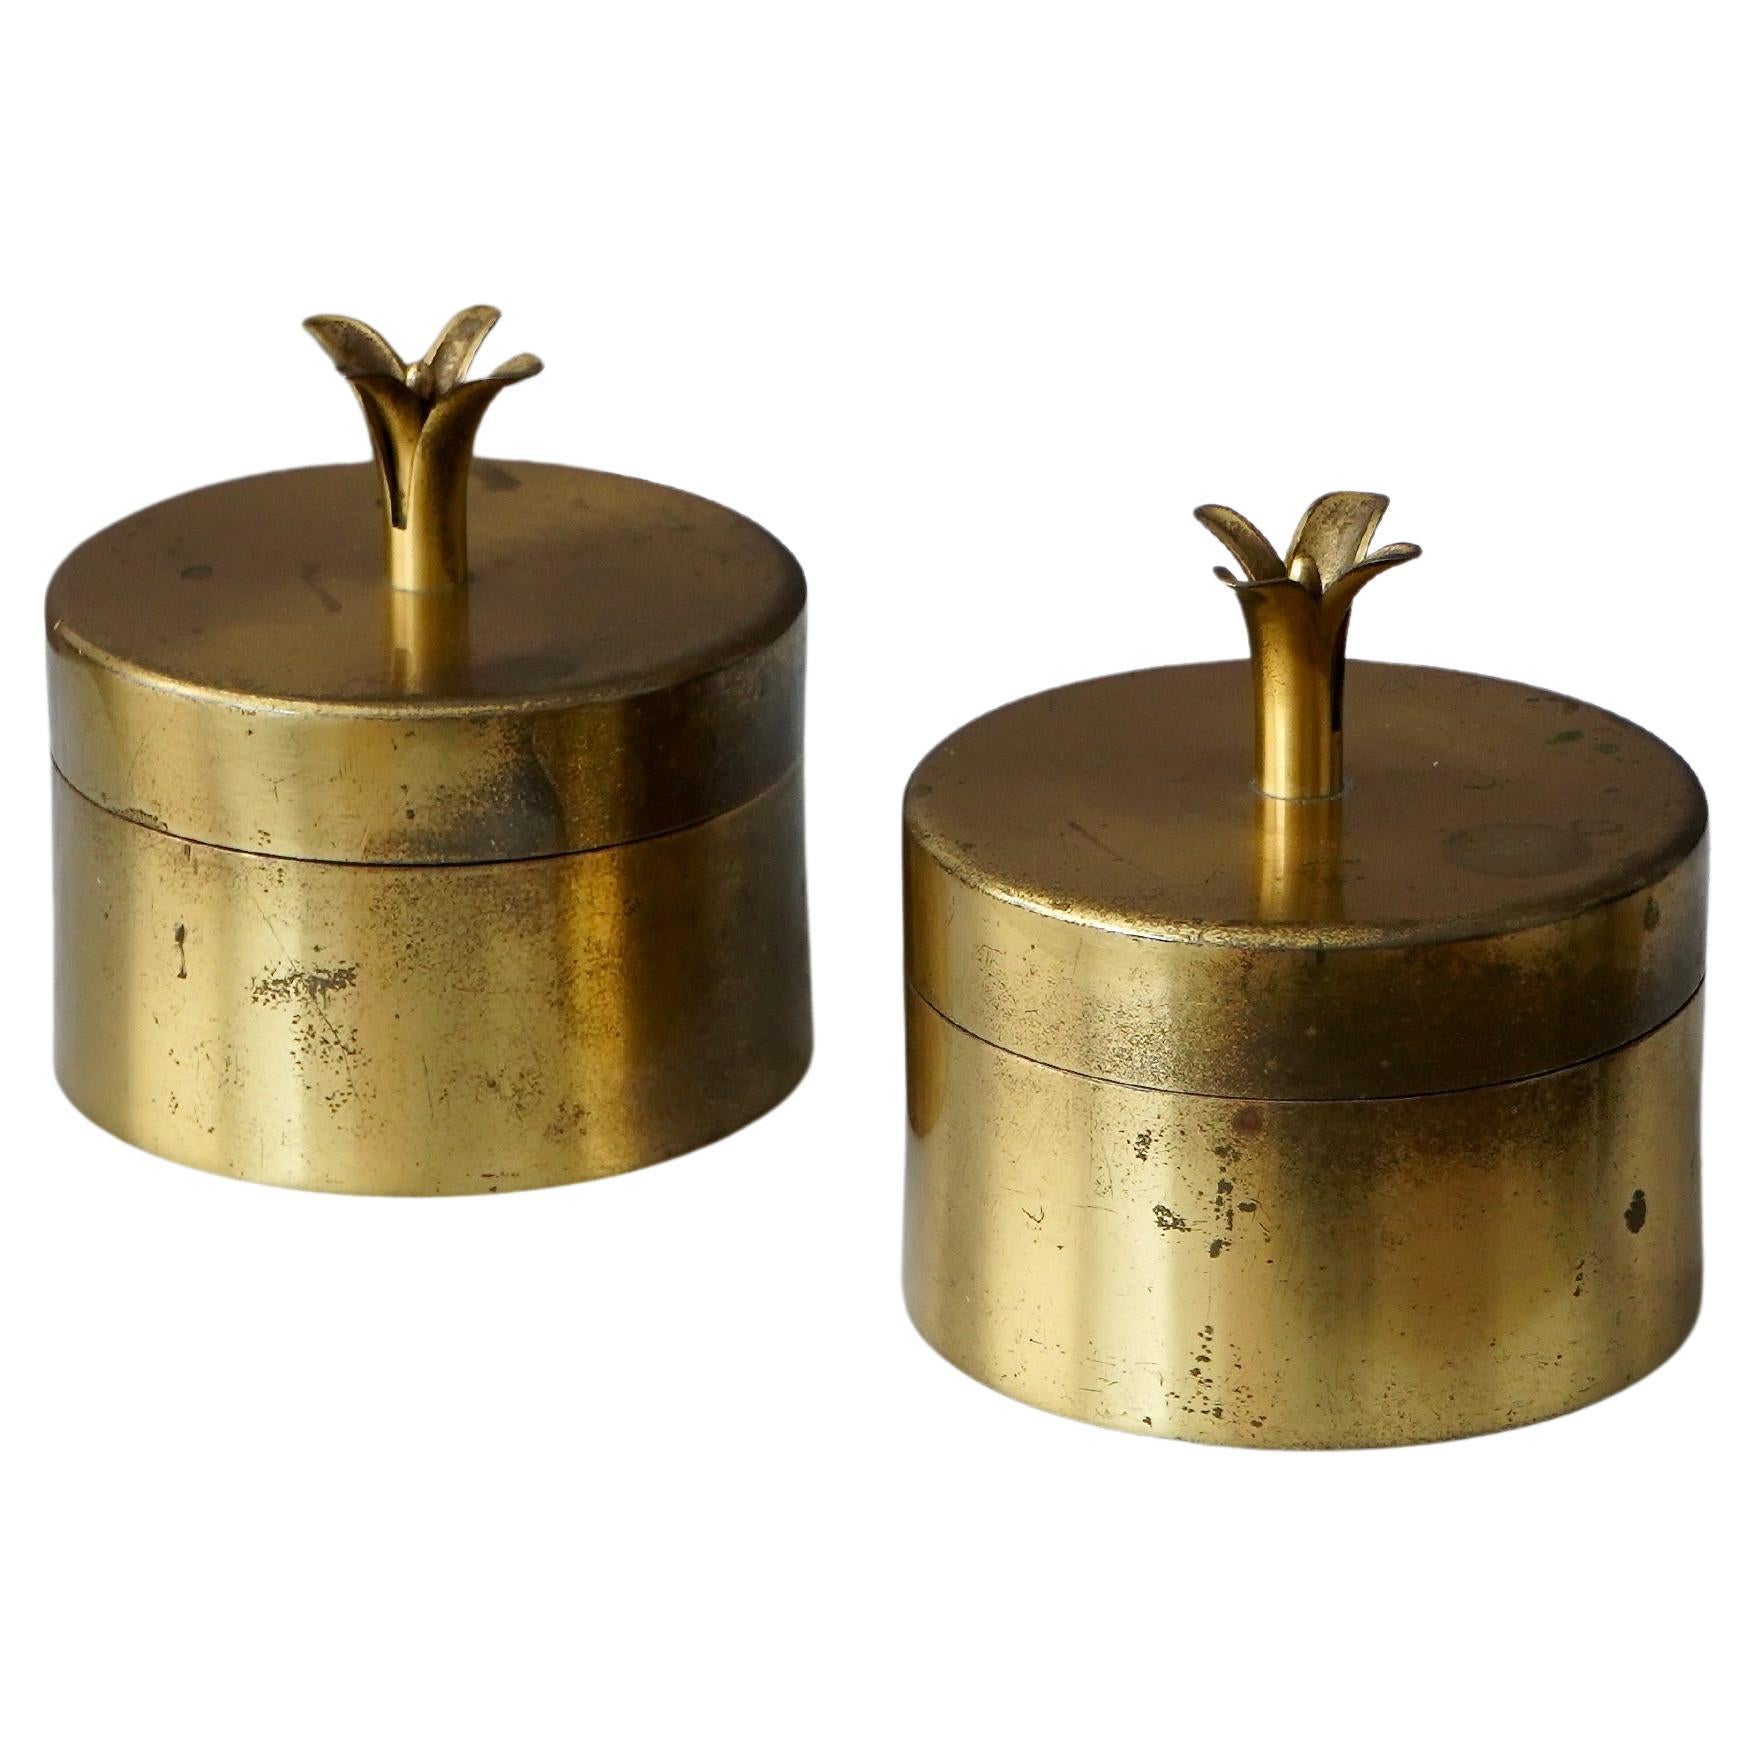 Pair of Brass Lidded Boxes by Ivar Ålenius Björk for Ystad Metall, Sweden, 1930s